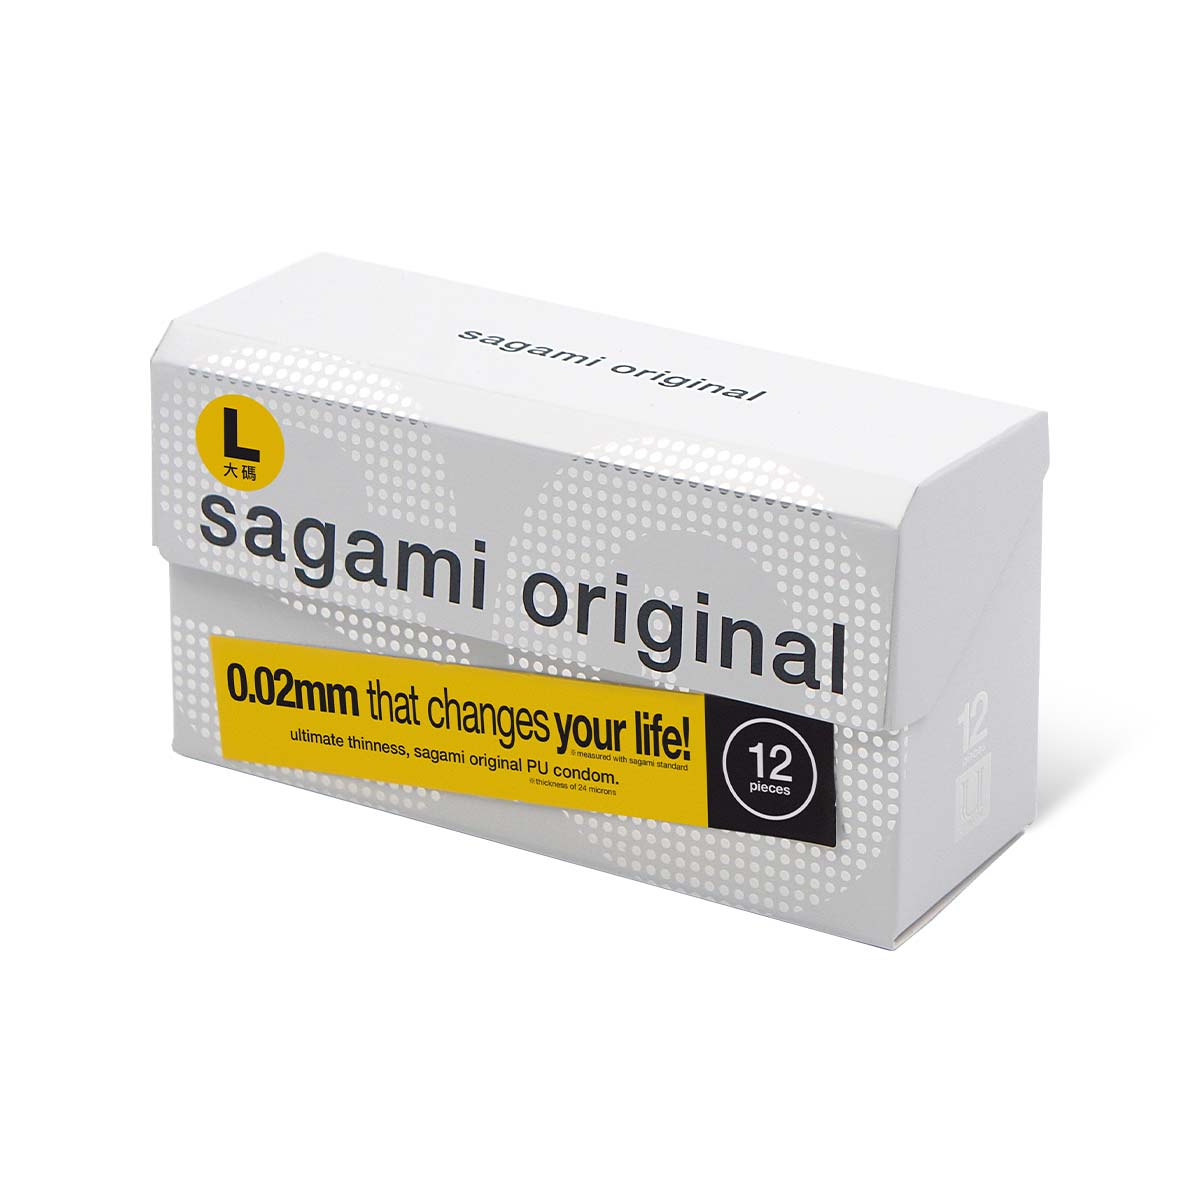 Sagami Original 0.02 L-size 58mm 12's Pack PU Condom-p_1